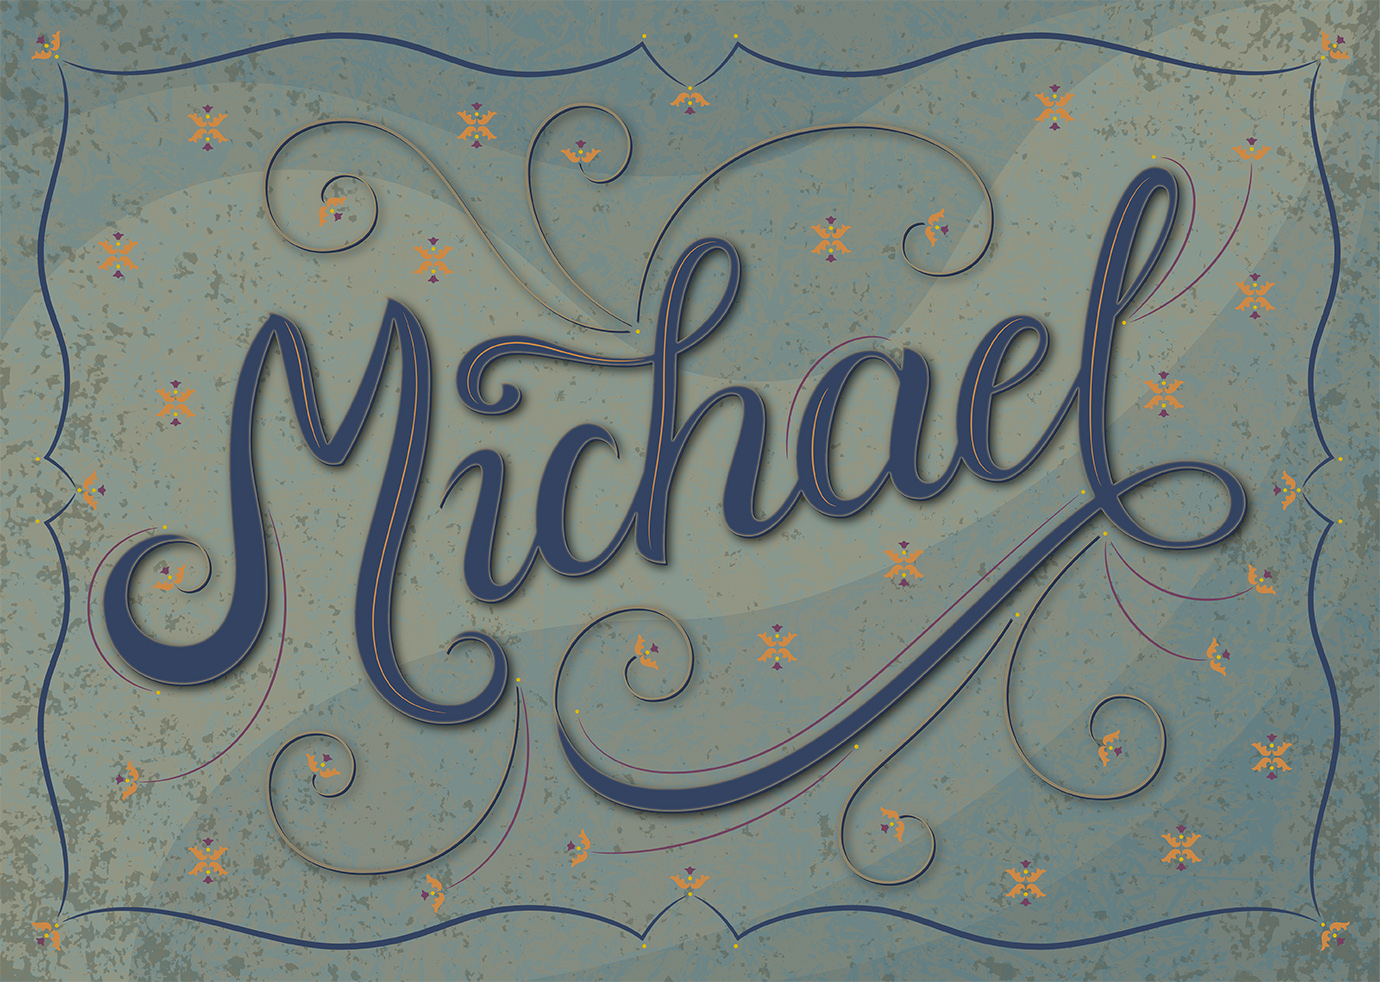 Lettering piece "Michael"